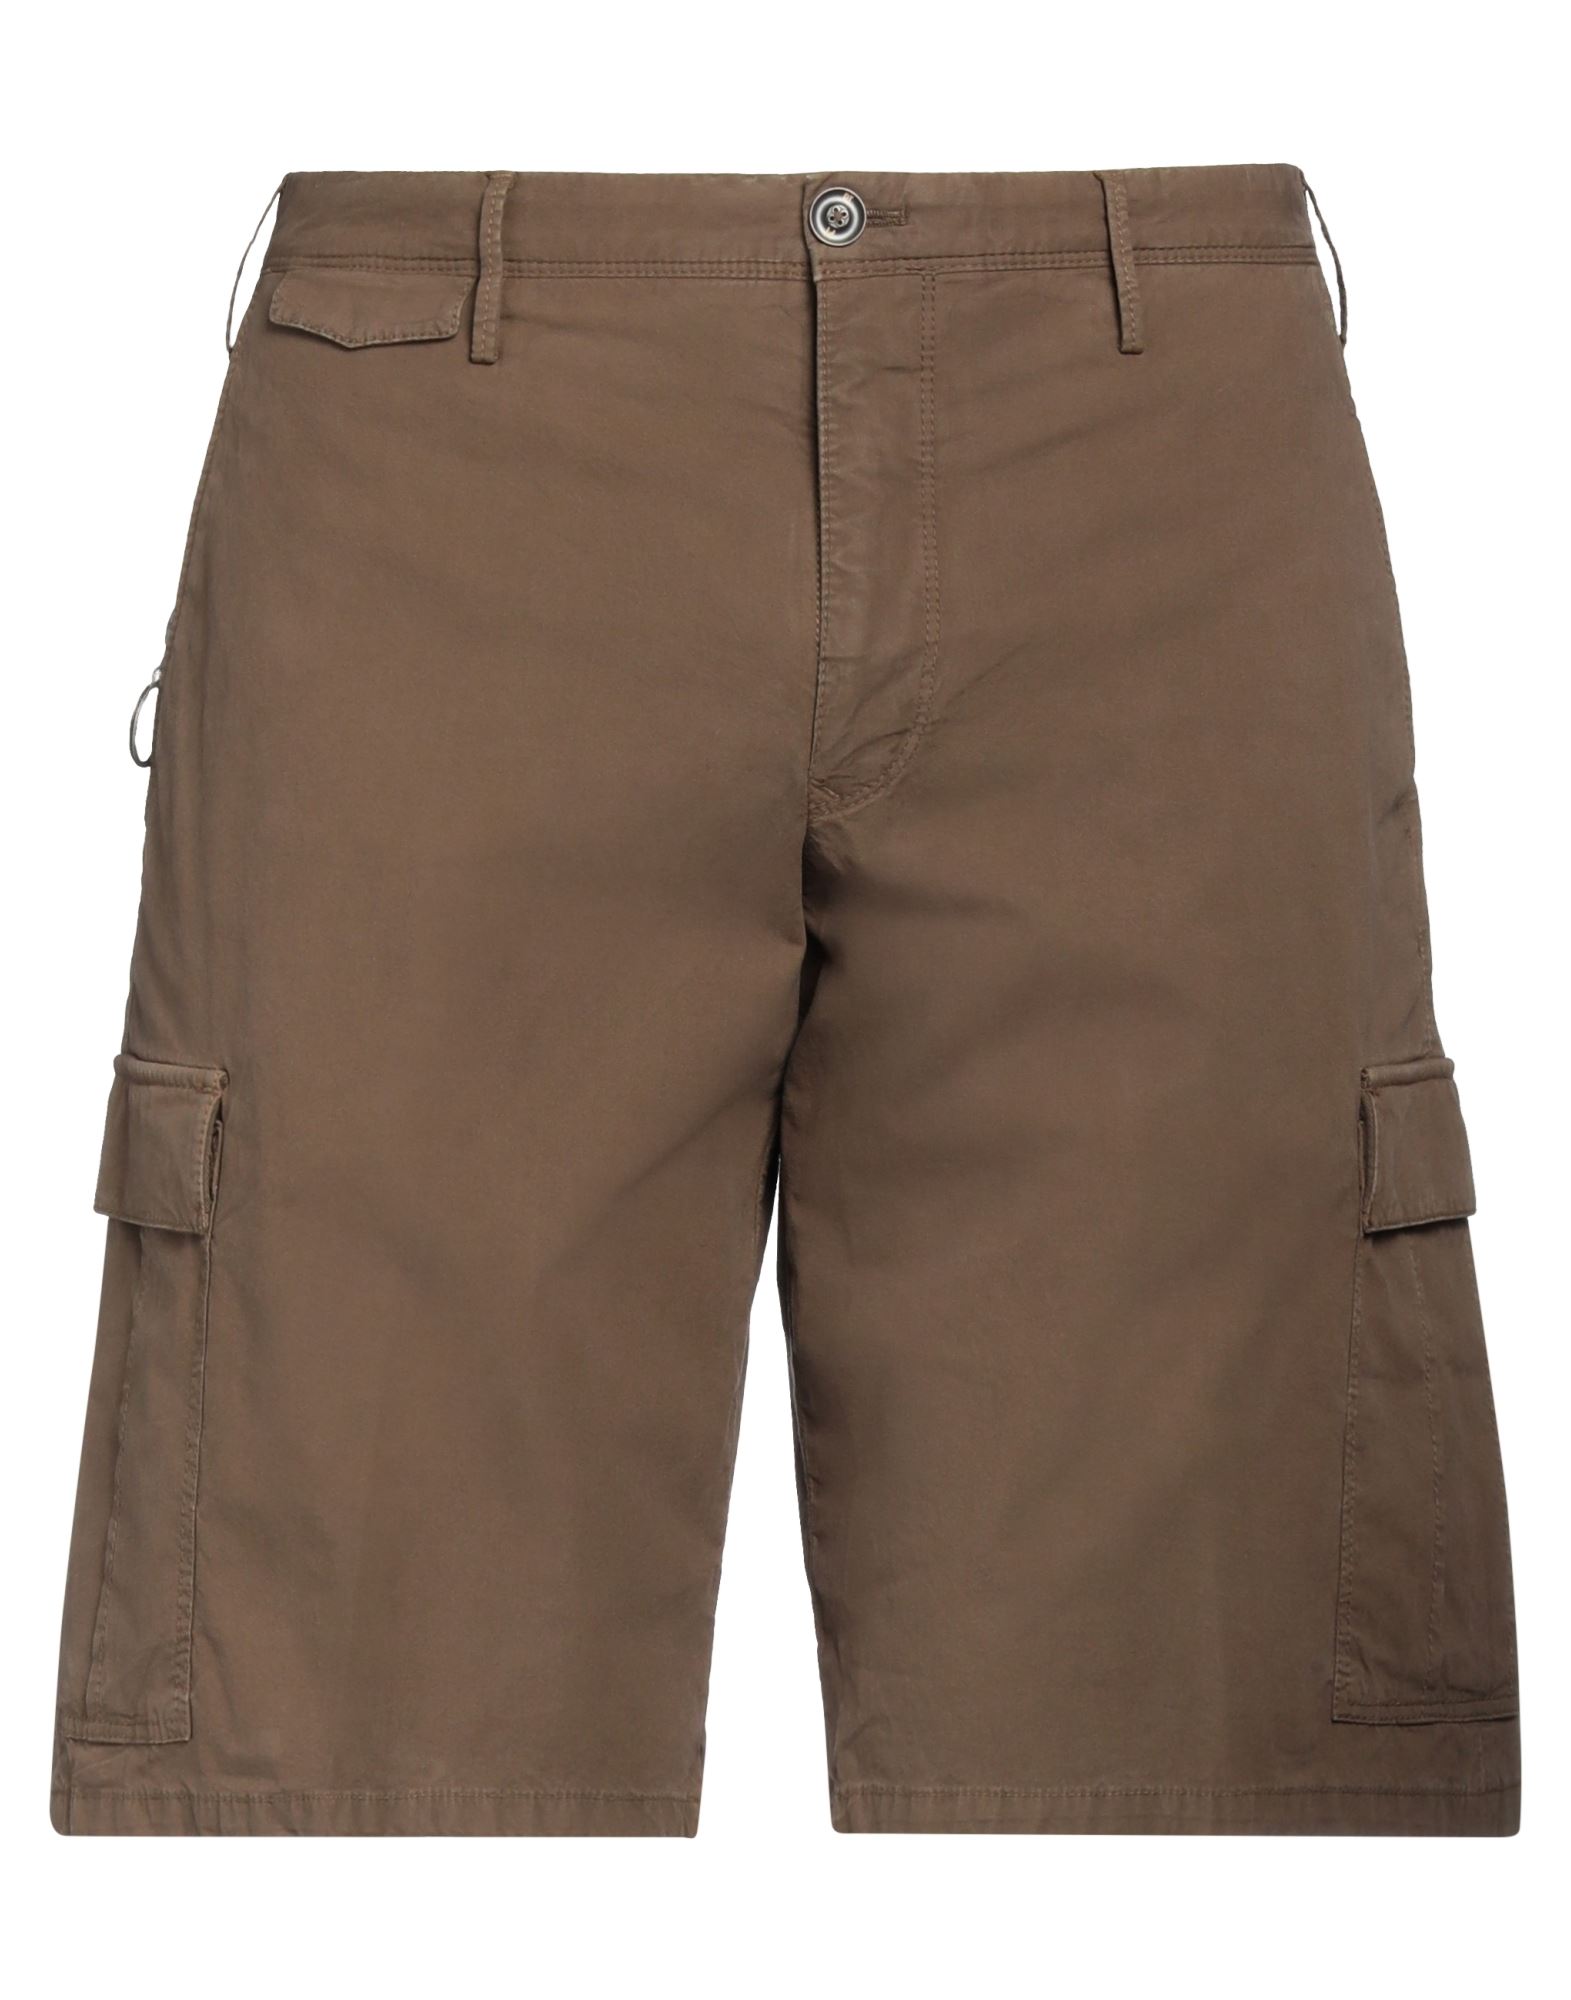 Pt Torino Man Shorts & Bermuda Shorts Brown Size 36 Cotton, Elastane